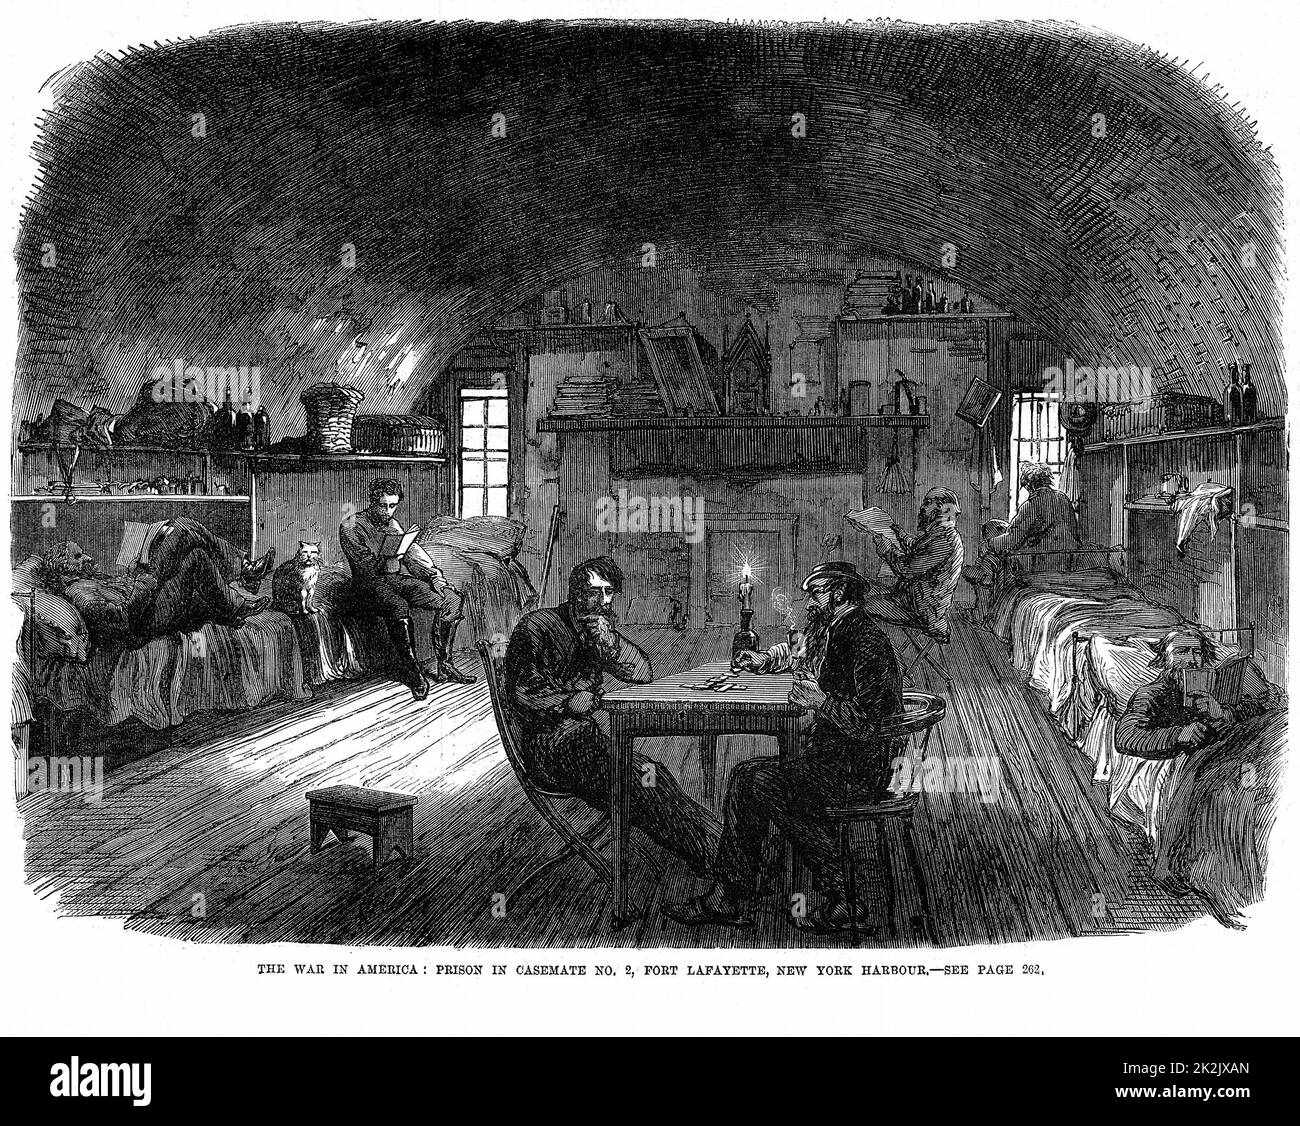 Guerre de Sécession 1861-65: Prison fédérale (nord) à fort Lafayette, dans le port de New York, utilisée pour détenir des prisonniers confédérés (sud) depuis le début de la guerre. Vue dans l'un des cas. De 'The Illustrated London News', mars 1865. Gravure en bois Banque D'Images